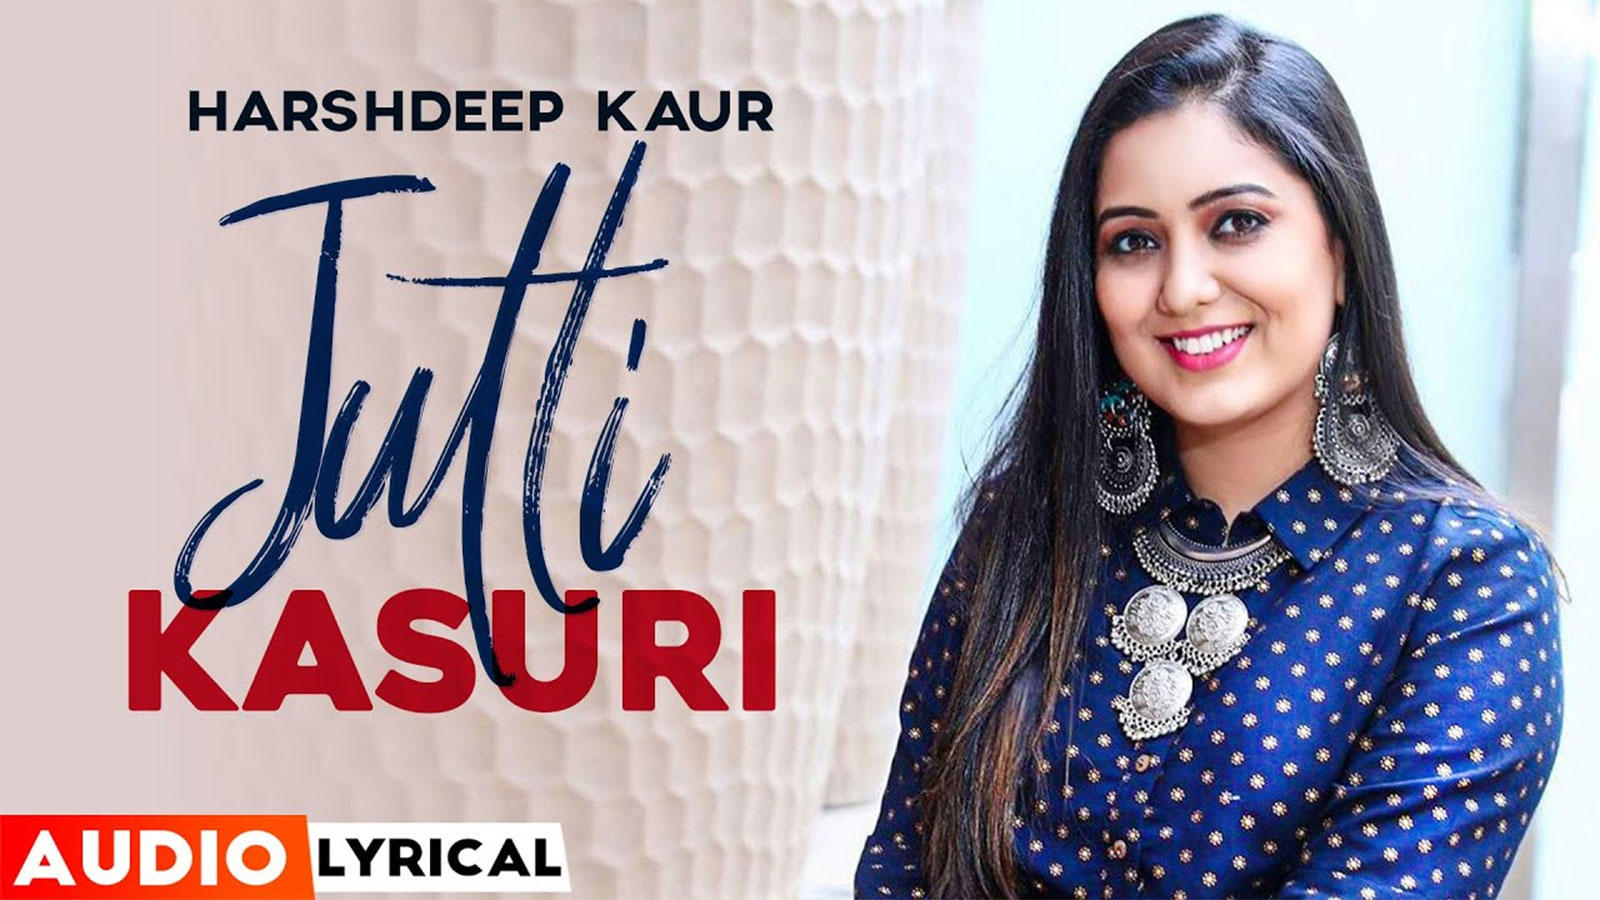 Watch New 2020 Punjabi Song Audio Lyrical 'Jutti Kasuri' Sung By Harshdeep  Kaur | Punjabi Video Songs - Times of India